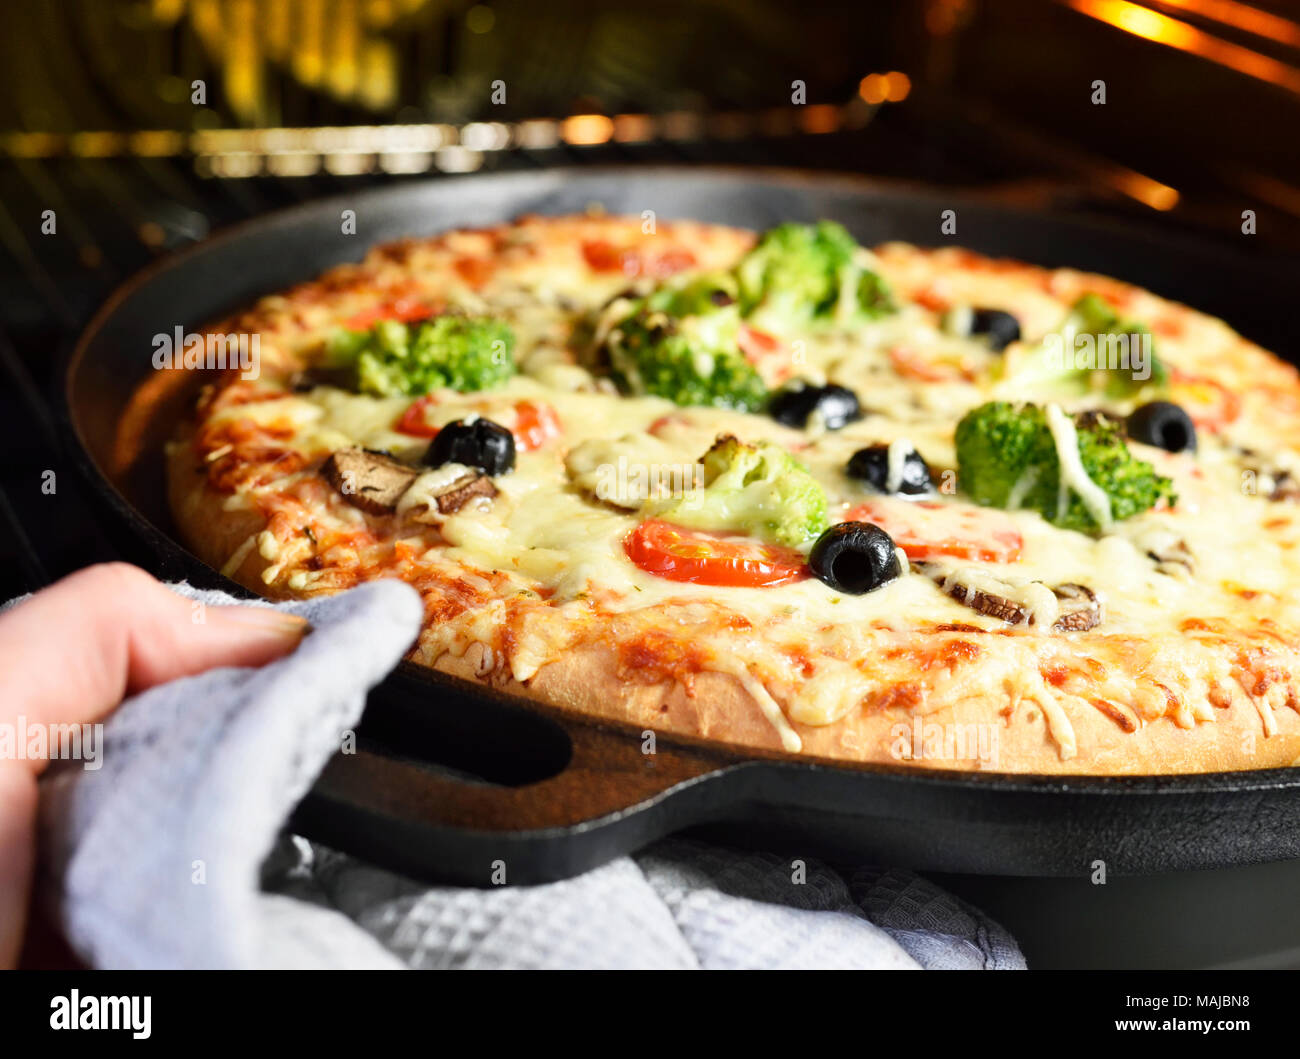 La pizza fatta in casa. Pizza vegetariana in una teglia,pizza vegetale con broccoli, funghi, pomodori e olive. La cottura della pizza scena. Foto Stock